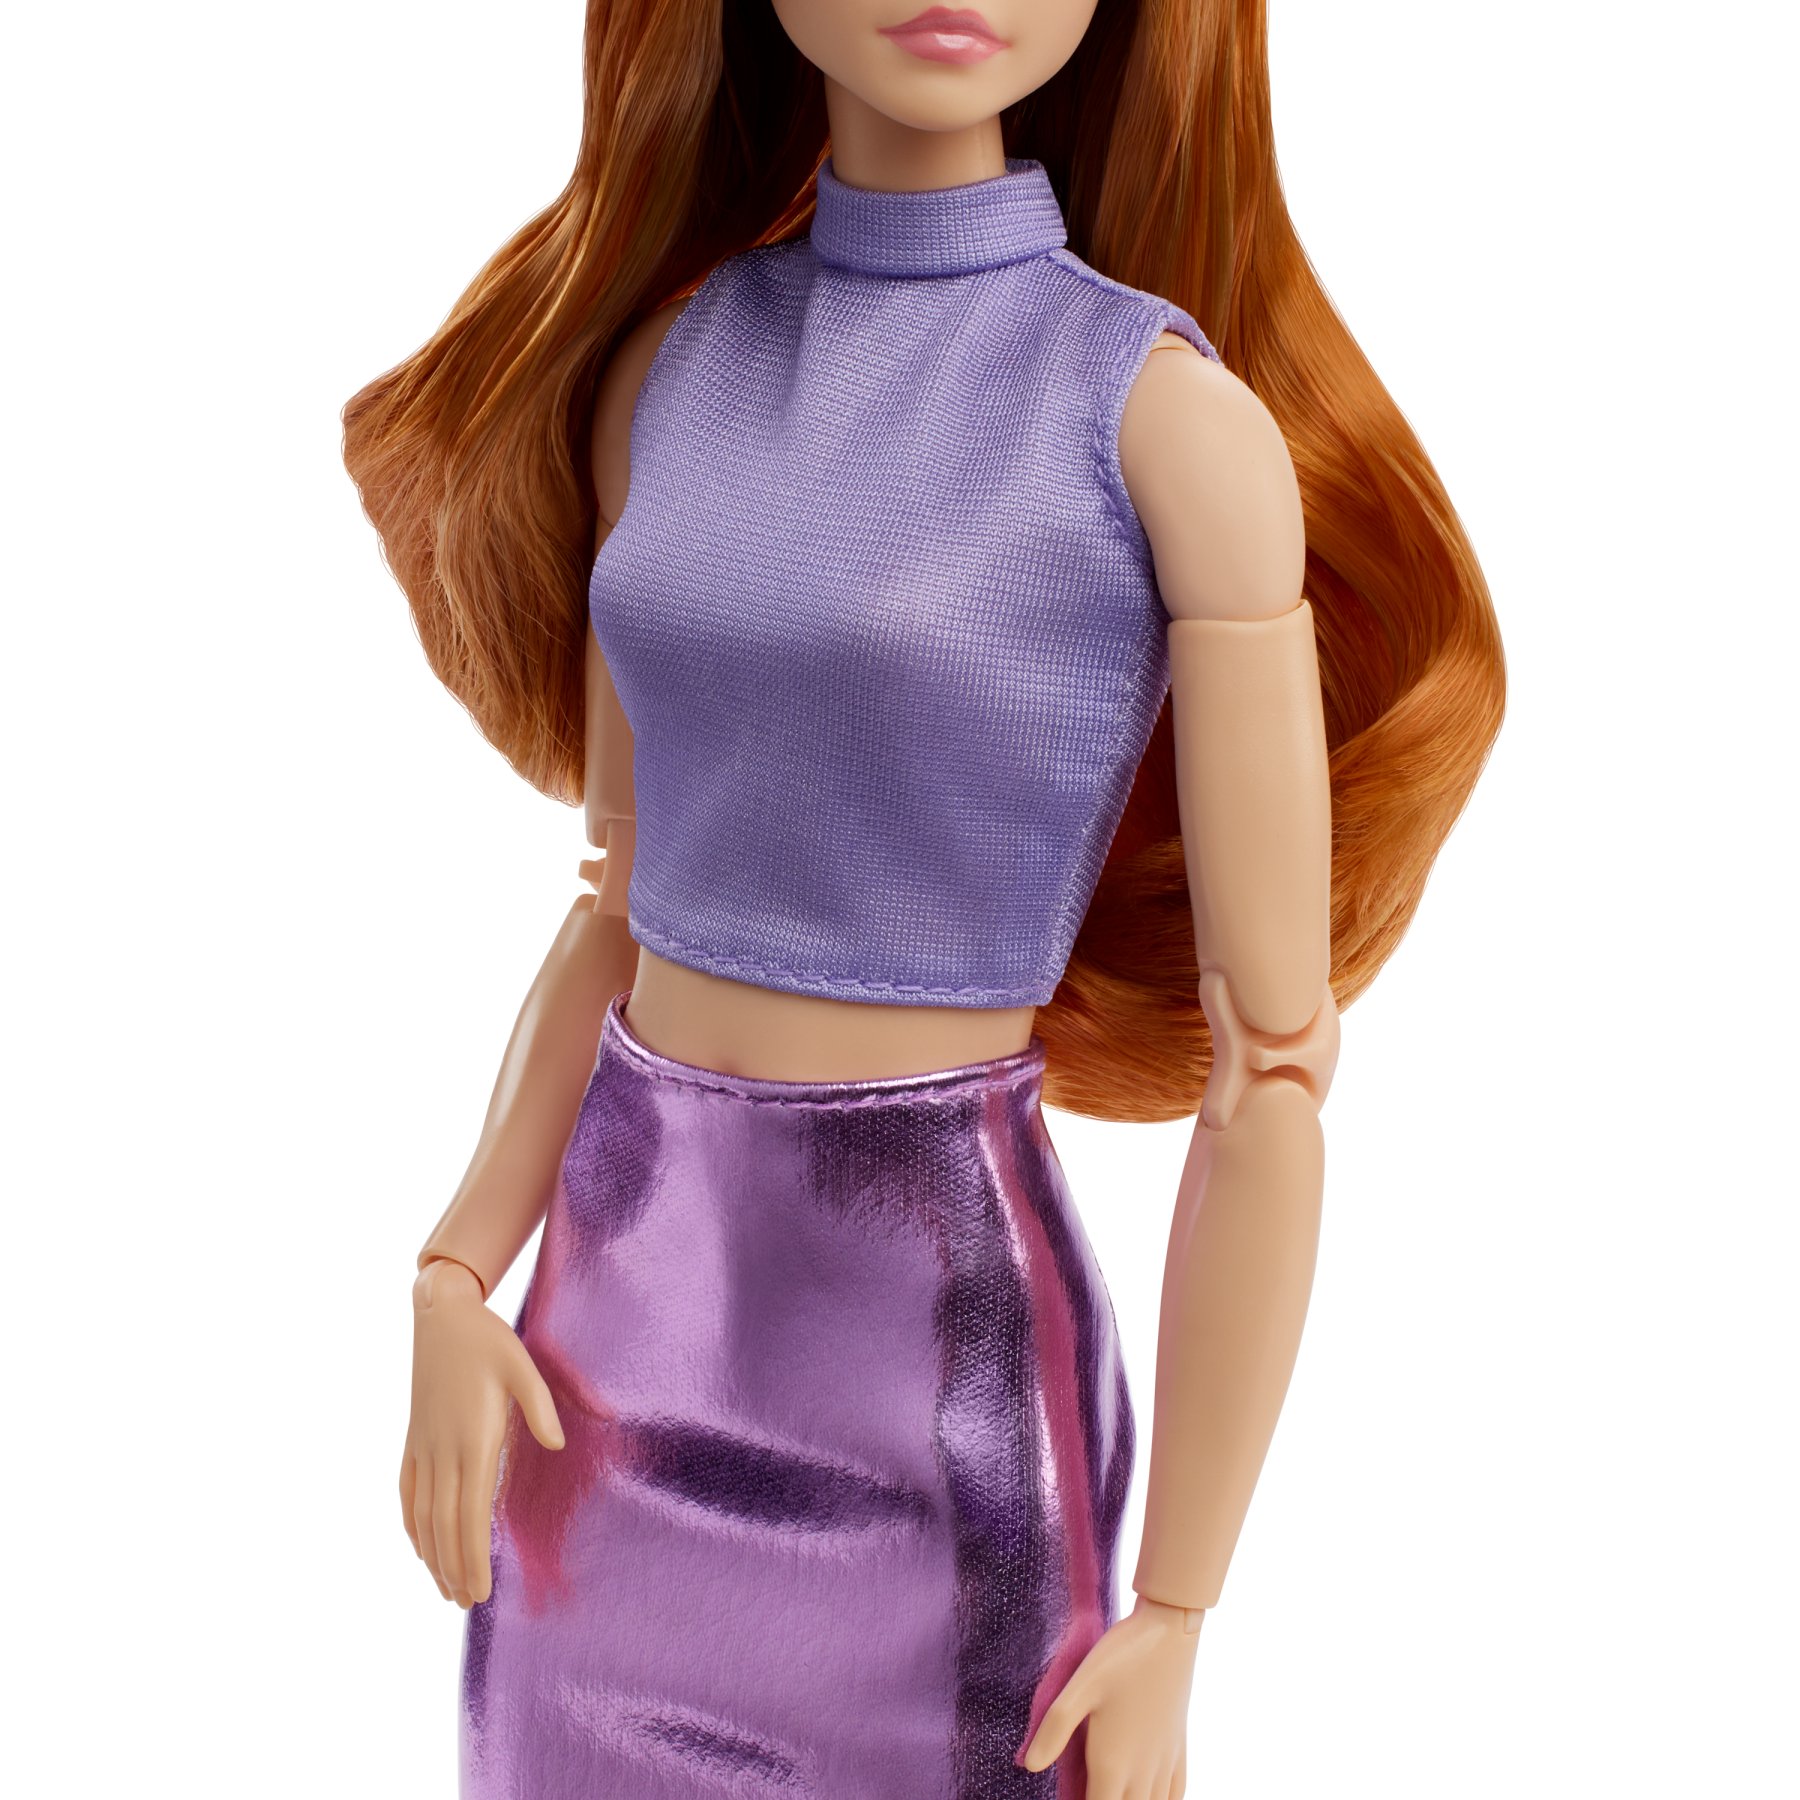 Barbie looks - bambola da collezione n. 20, barbie con capelli rossi e look moderno anni 2000, top lavanda, gonna in finta pelle e stivali al ginocchio - Barbie